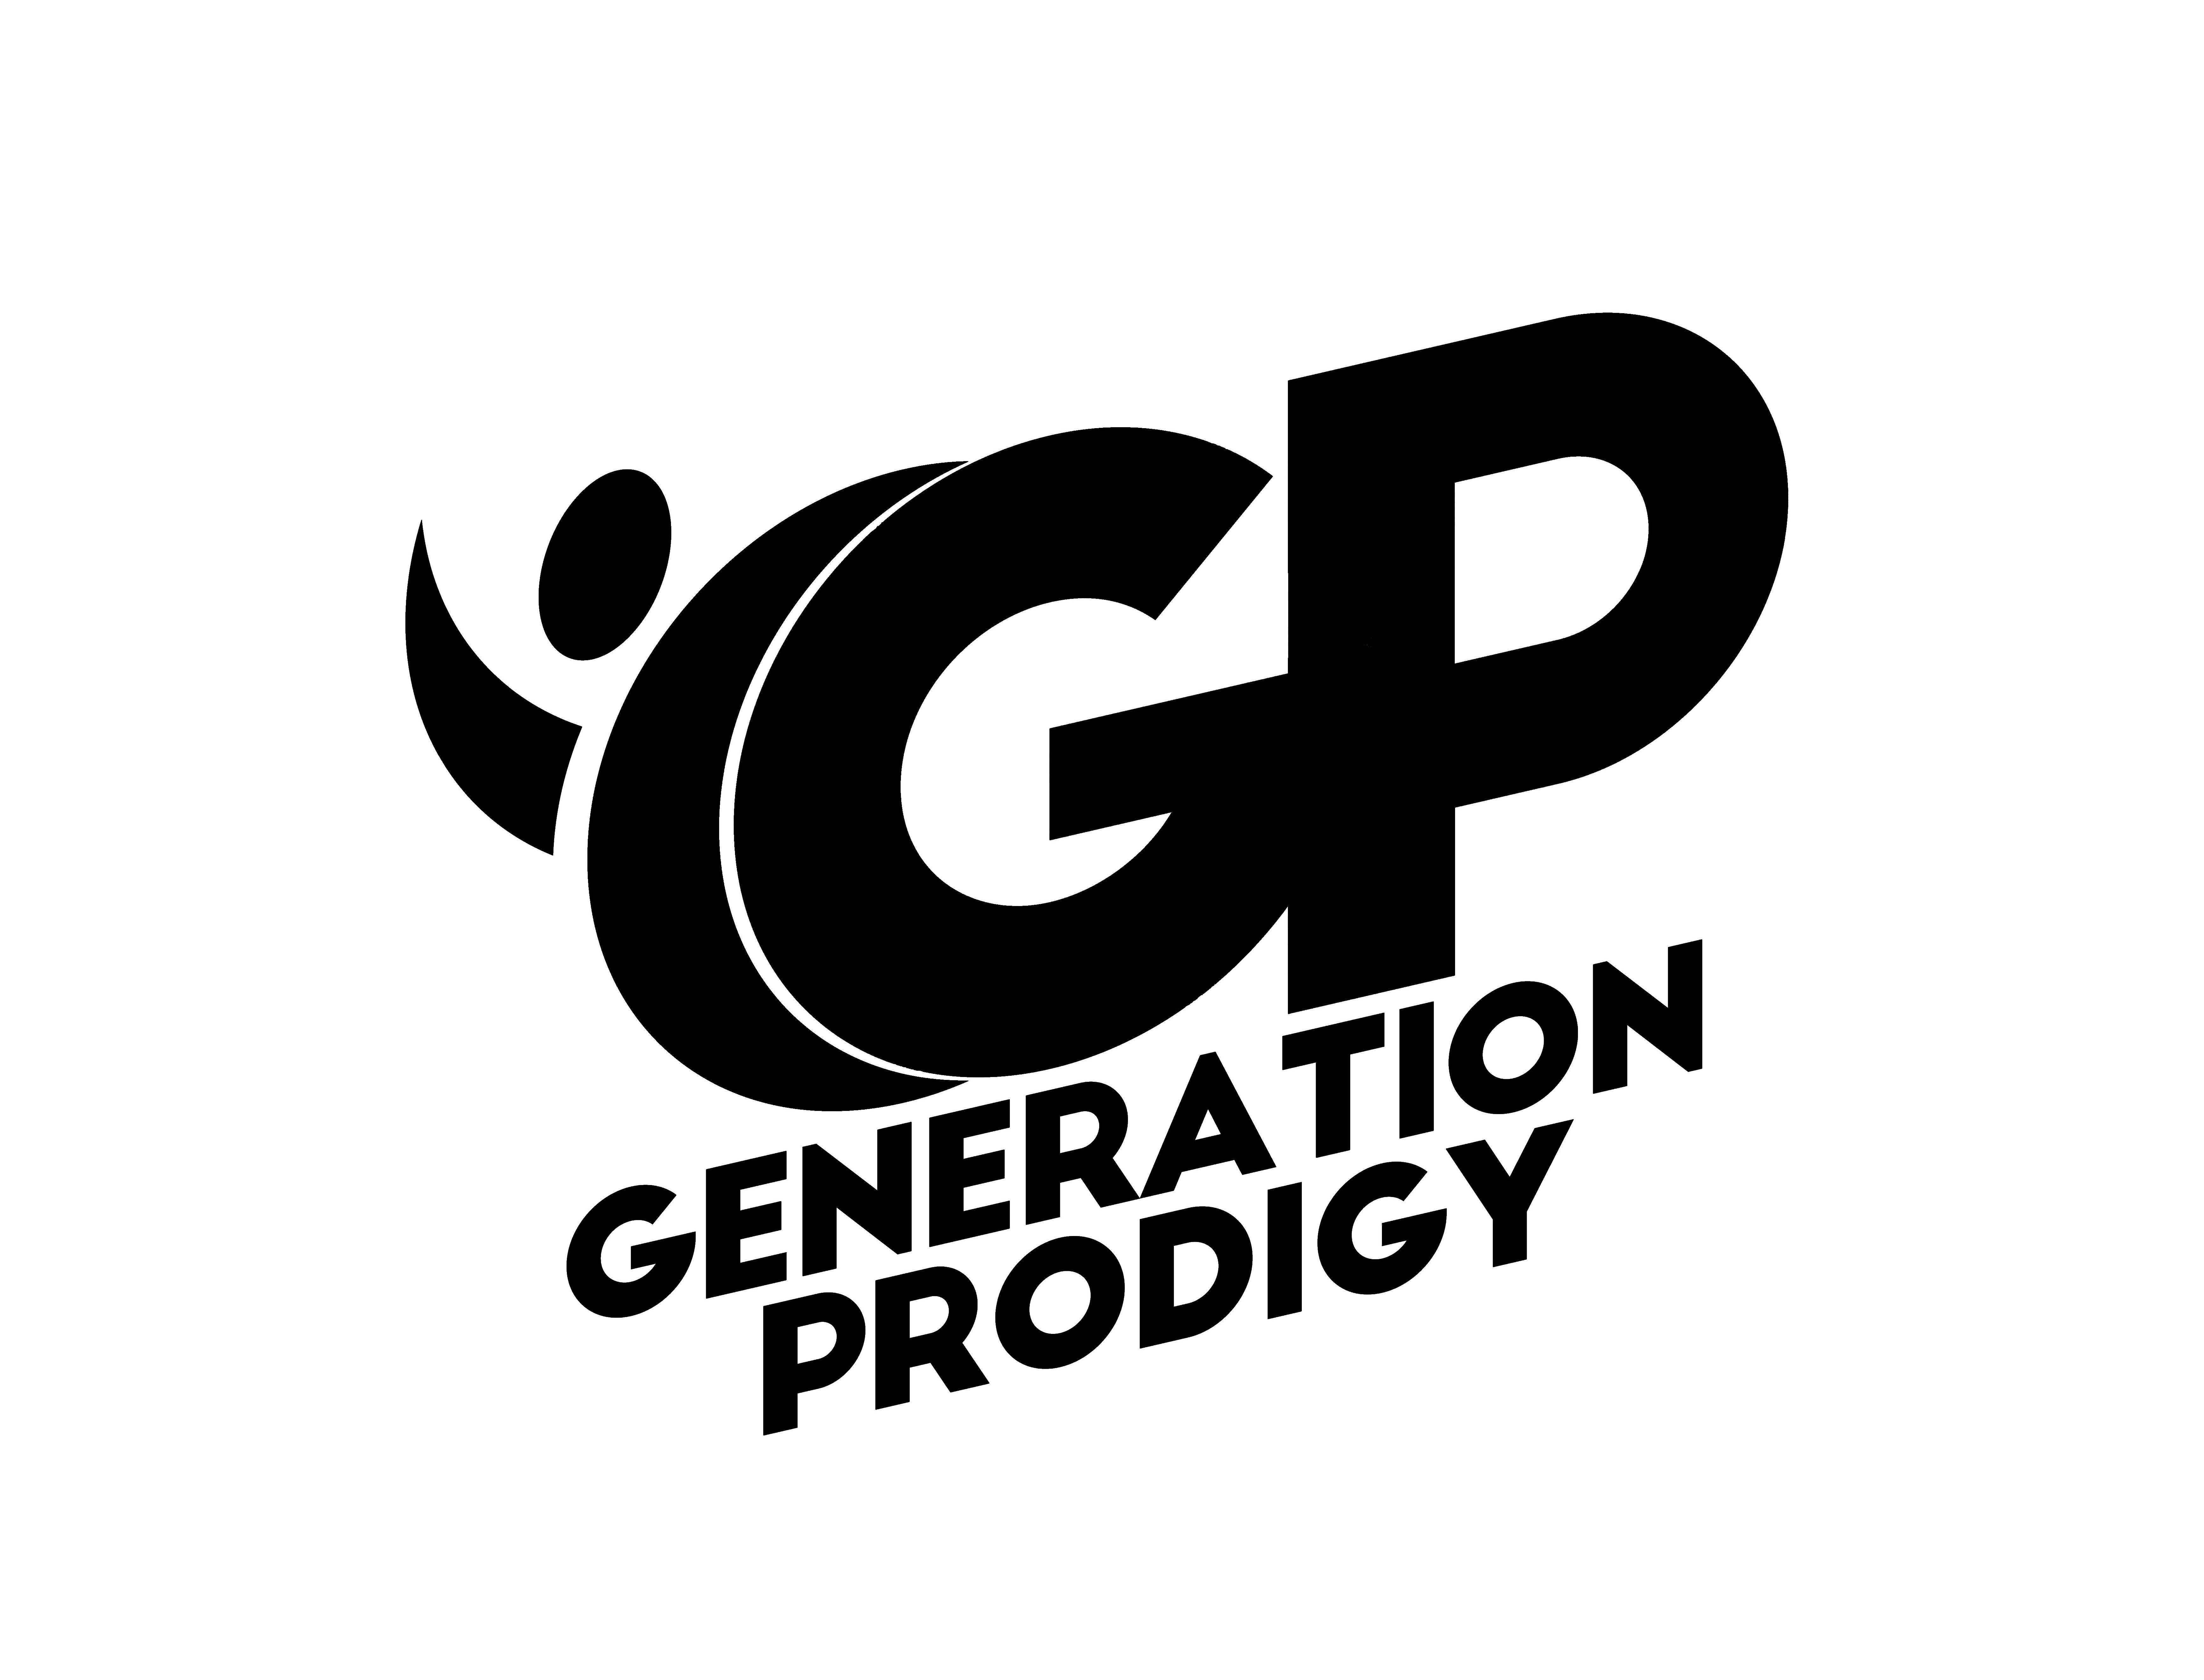  GP GENERATION PRODIGY